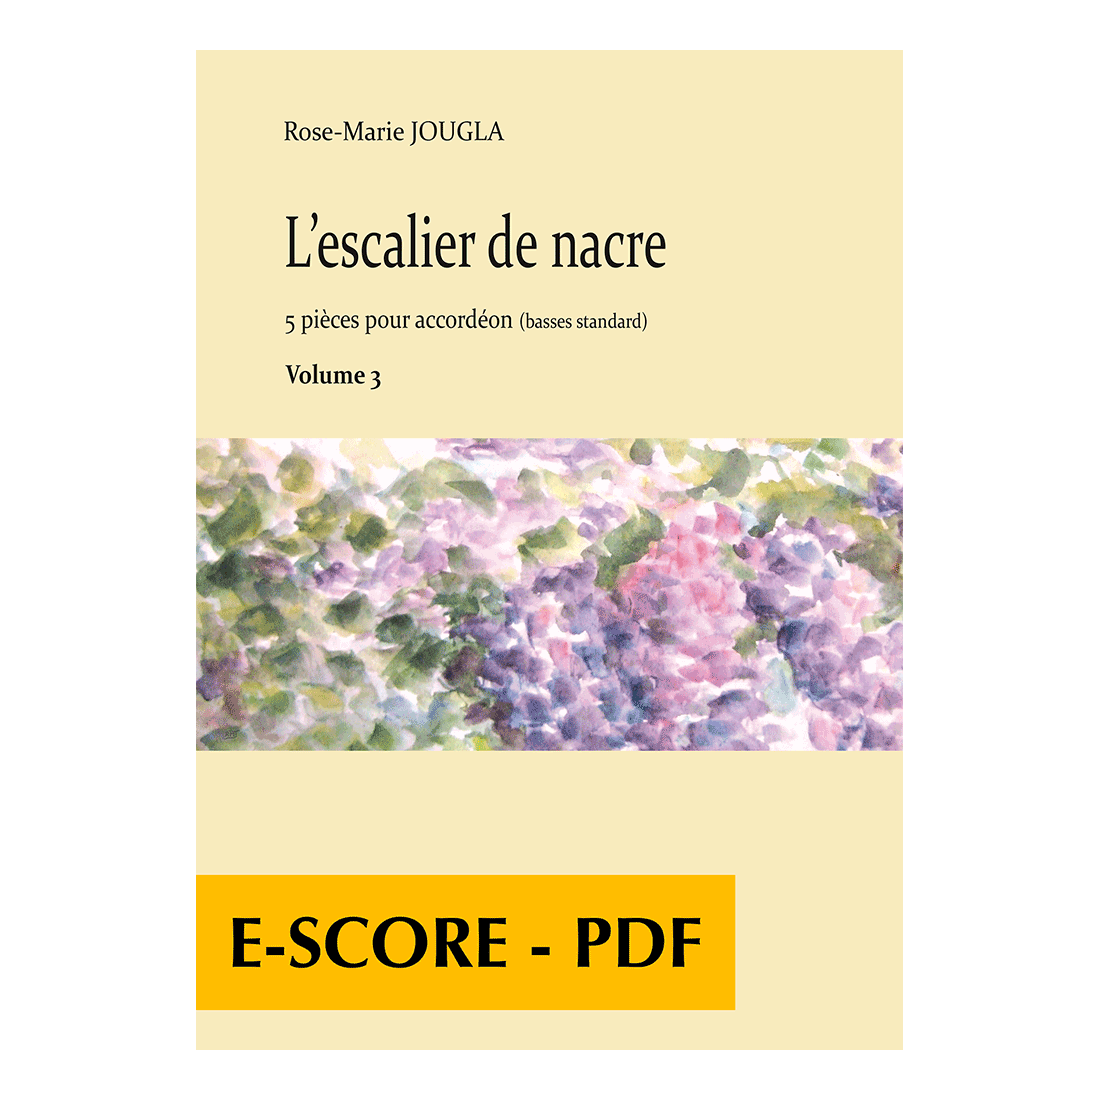 L'escalier de nacre﻿ for accordion - Volume 3 - E-score PDF